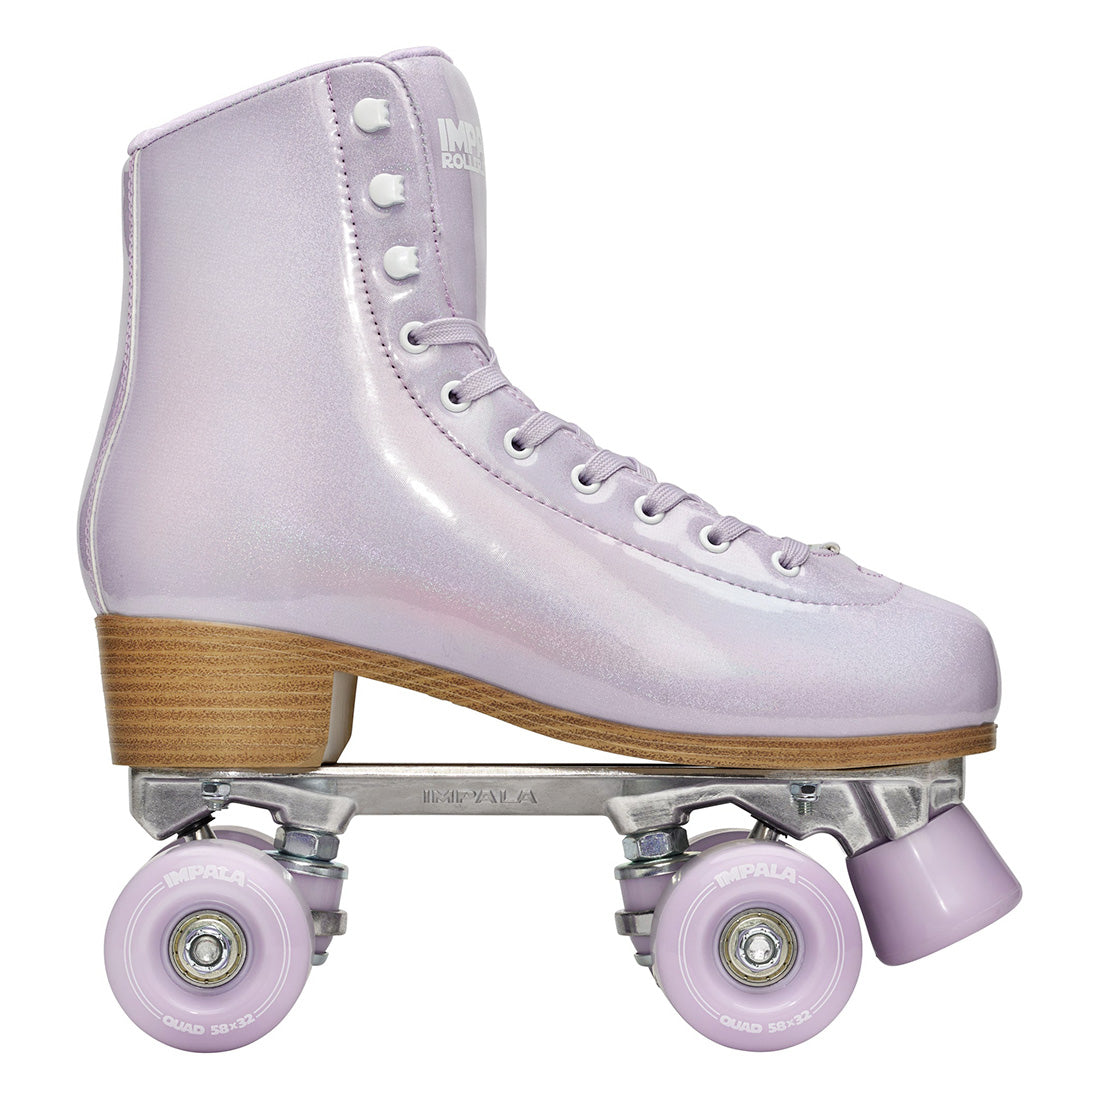 Impala Sidewalk - Lilac Glitter Roller Skates